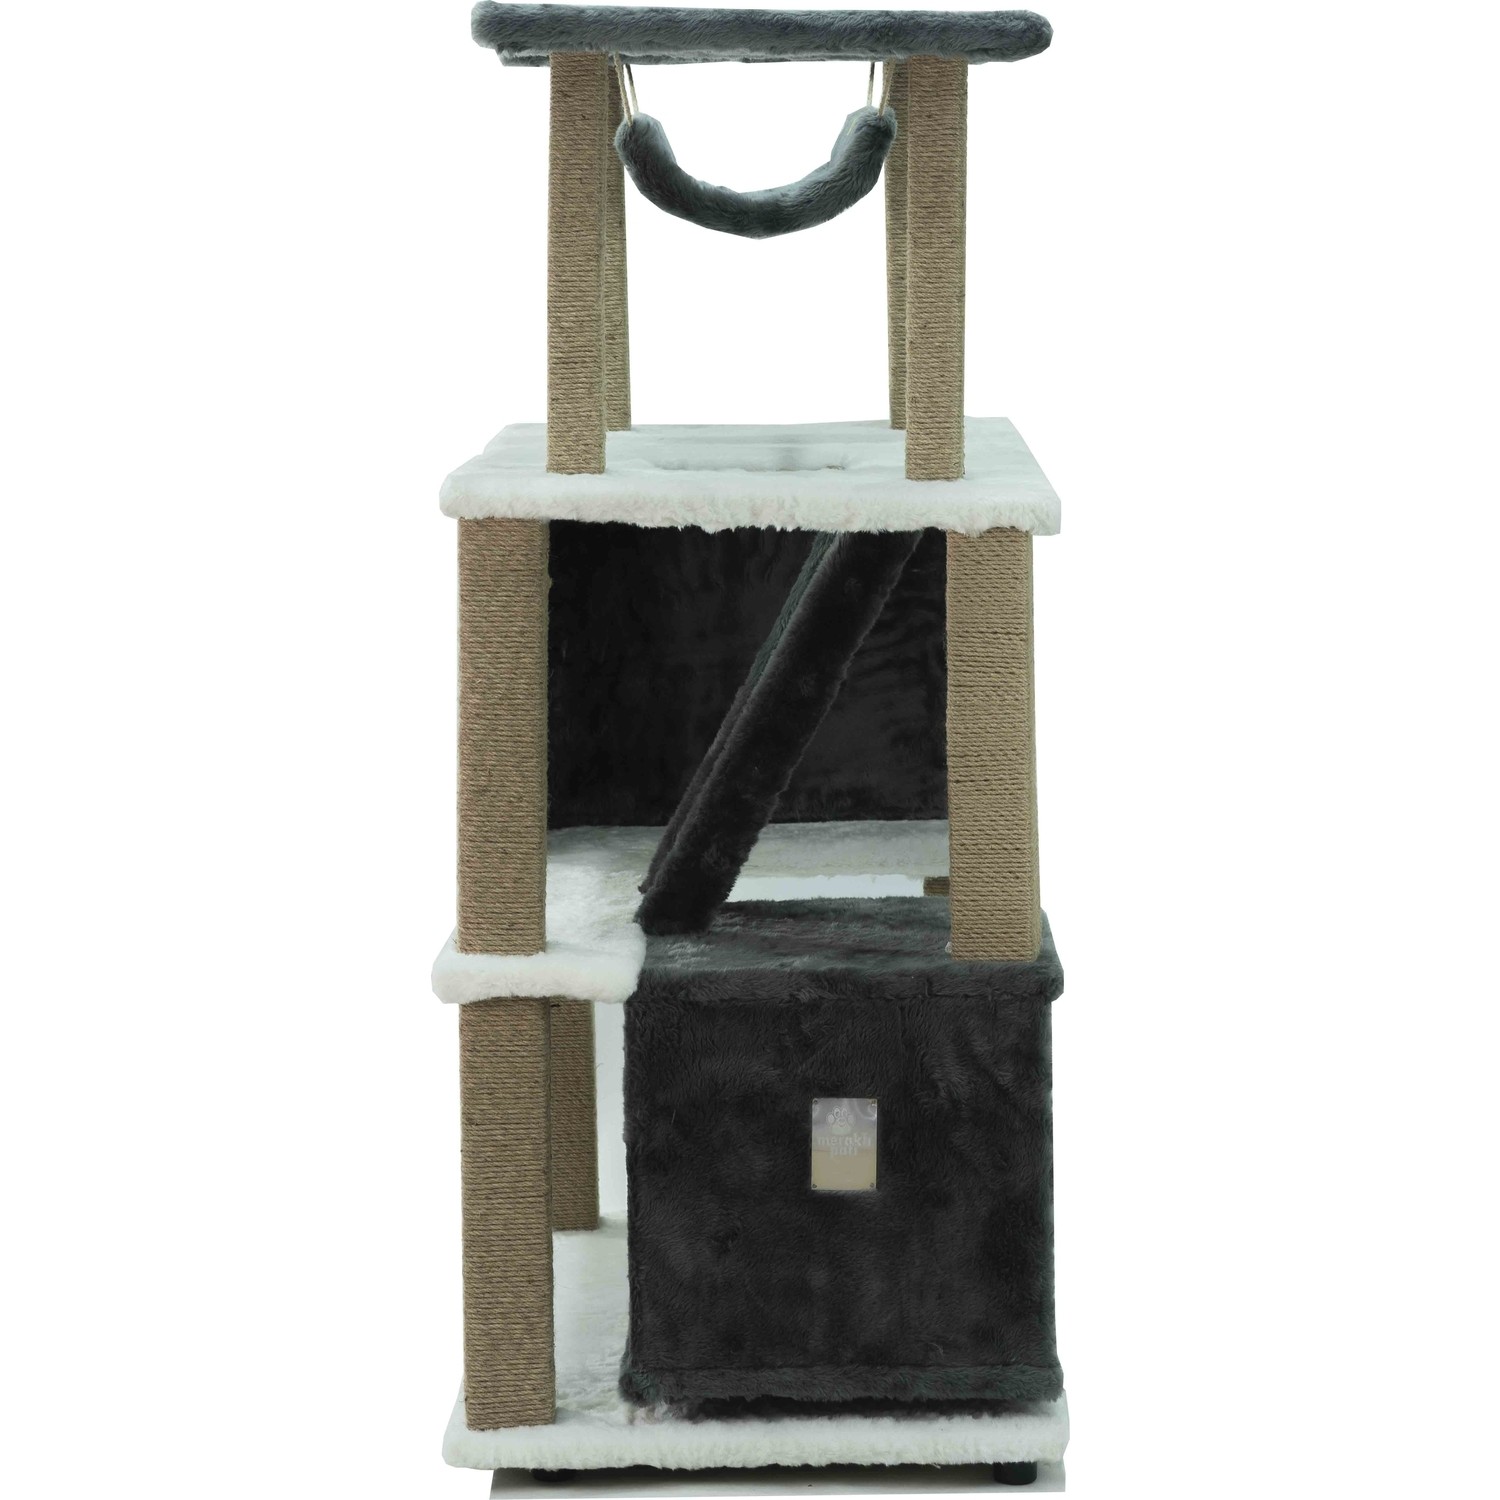 Meraklı Pati Arcla Kedi Kulesi ve Tırmalama Siyah Beyaz 155 Fiyatı